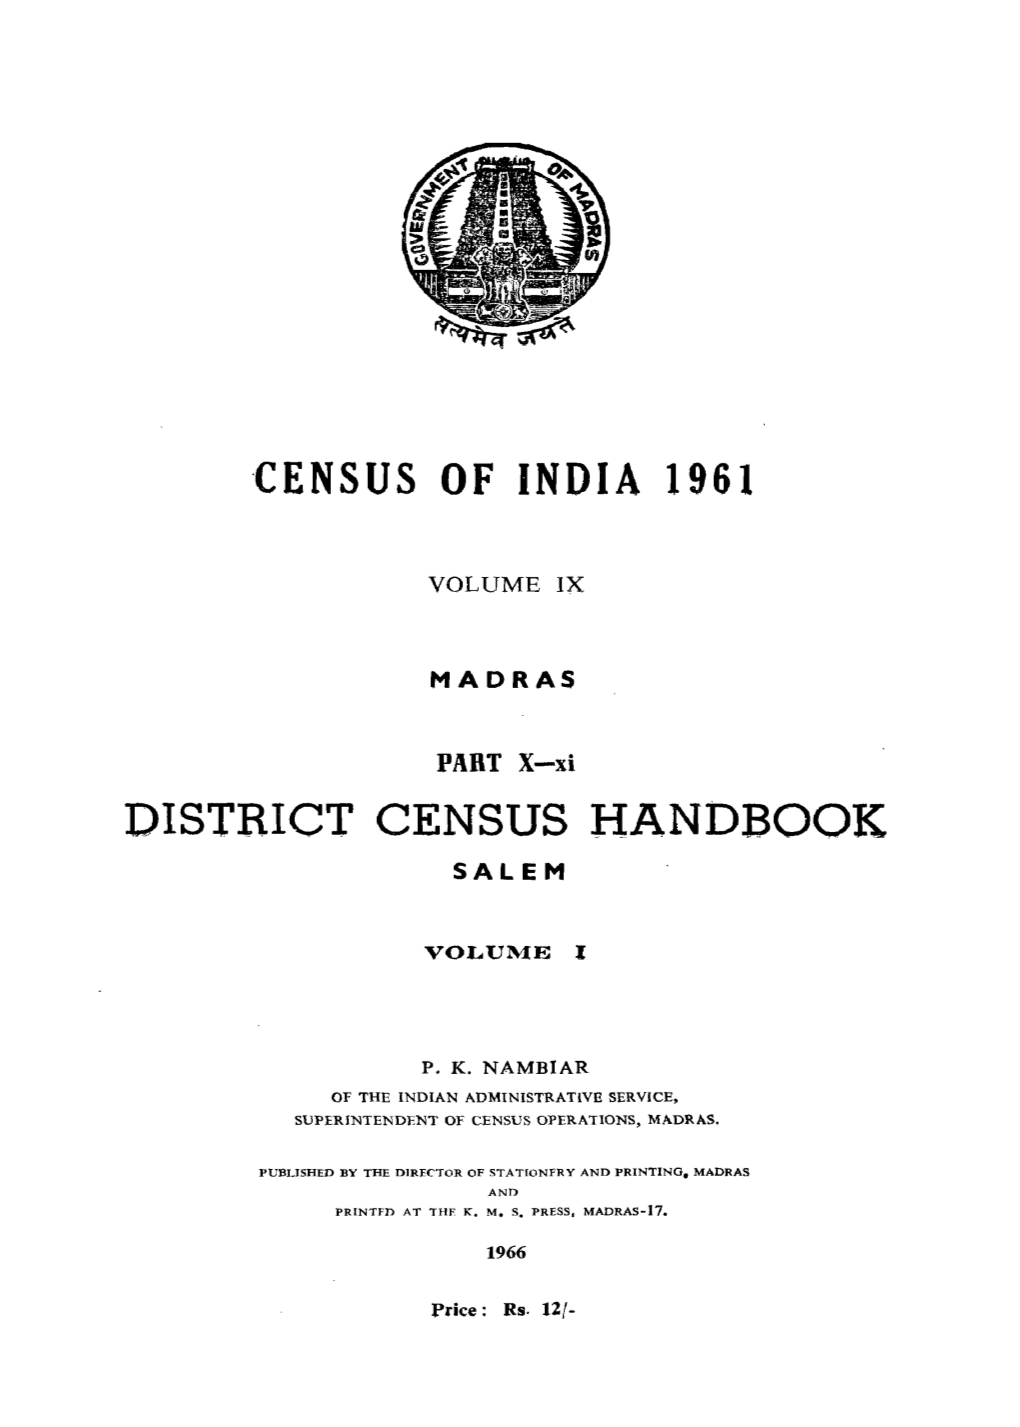 Madras- District Census Handbook, Salem, Part X-XI, Vol-I, Vol-IX